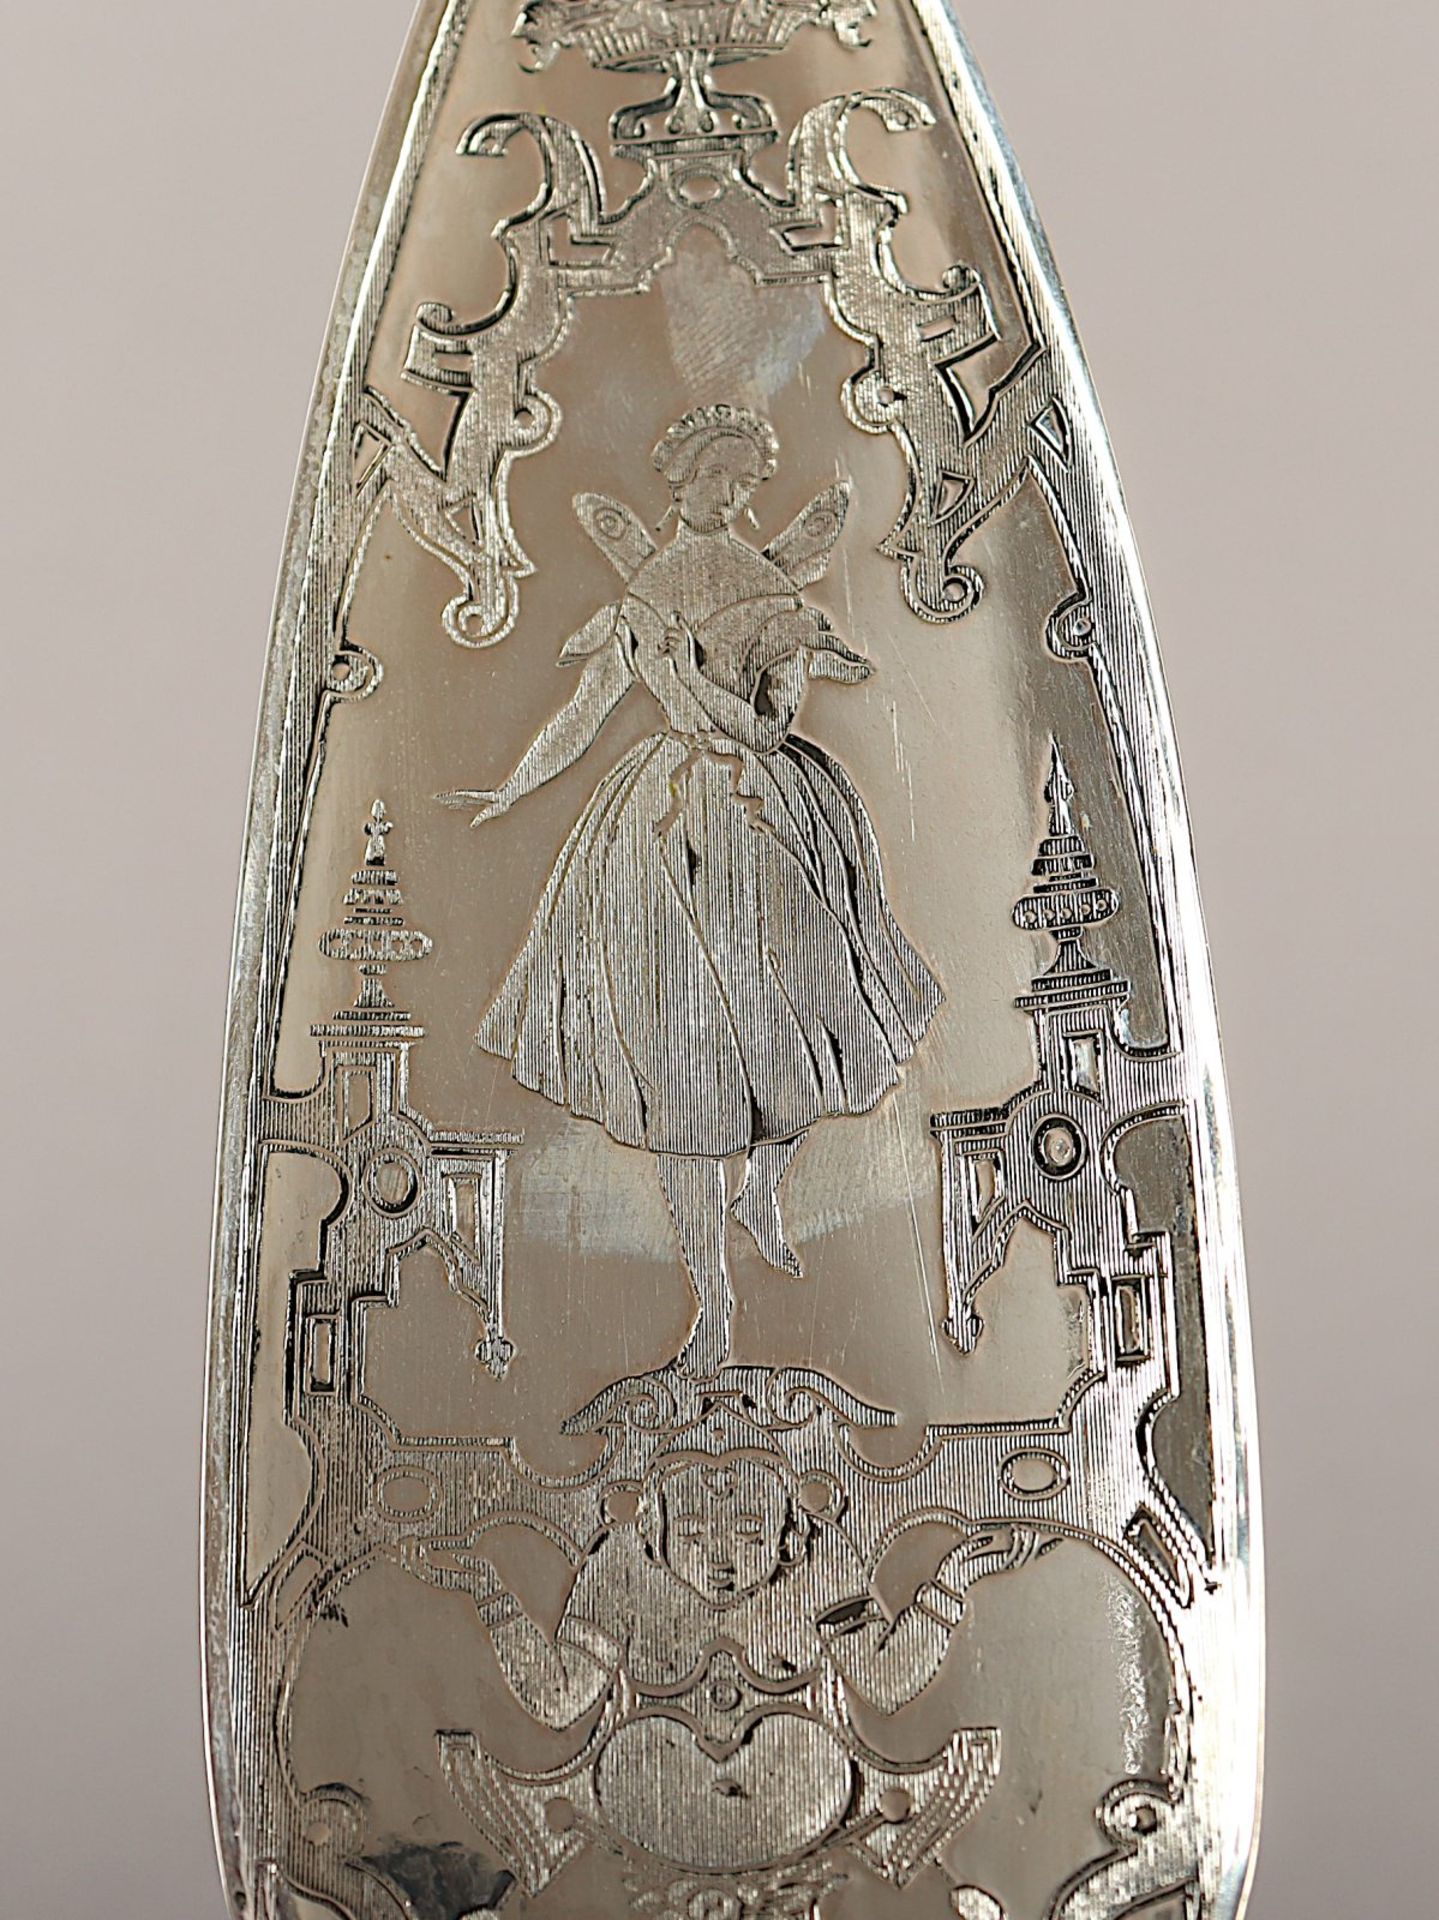 Heber, Silber, Glas,  Fanny Elßler in "La Sylphide" - Bild 2 aus 2